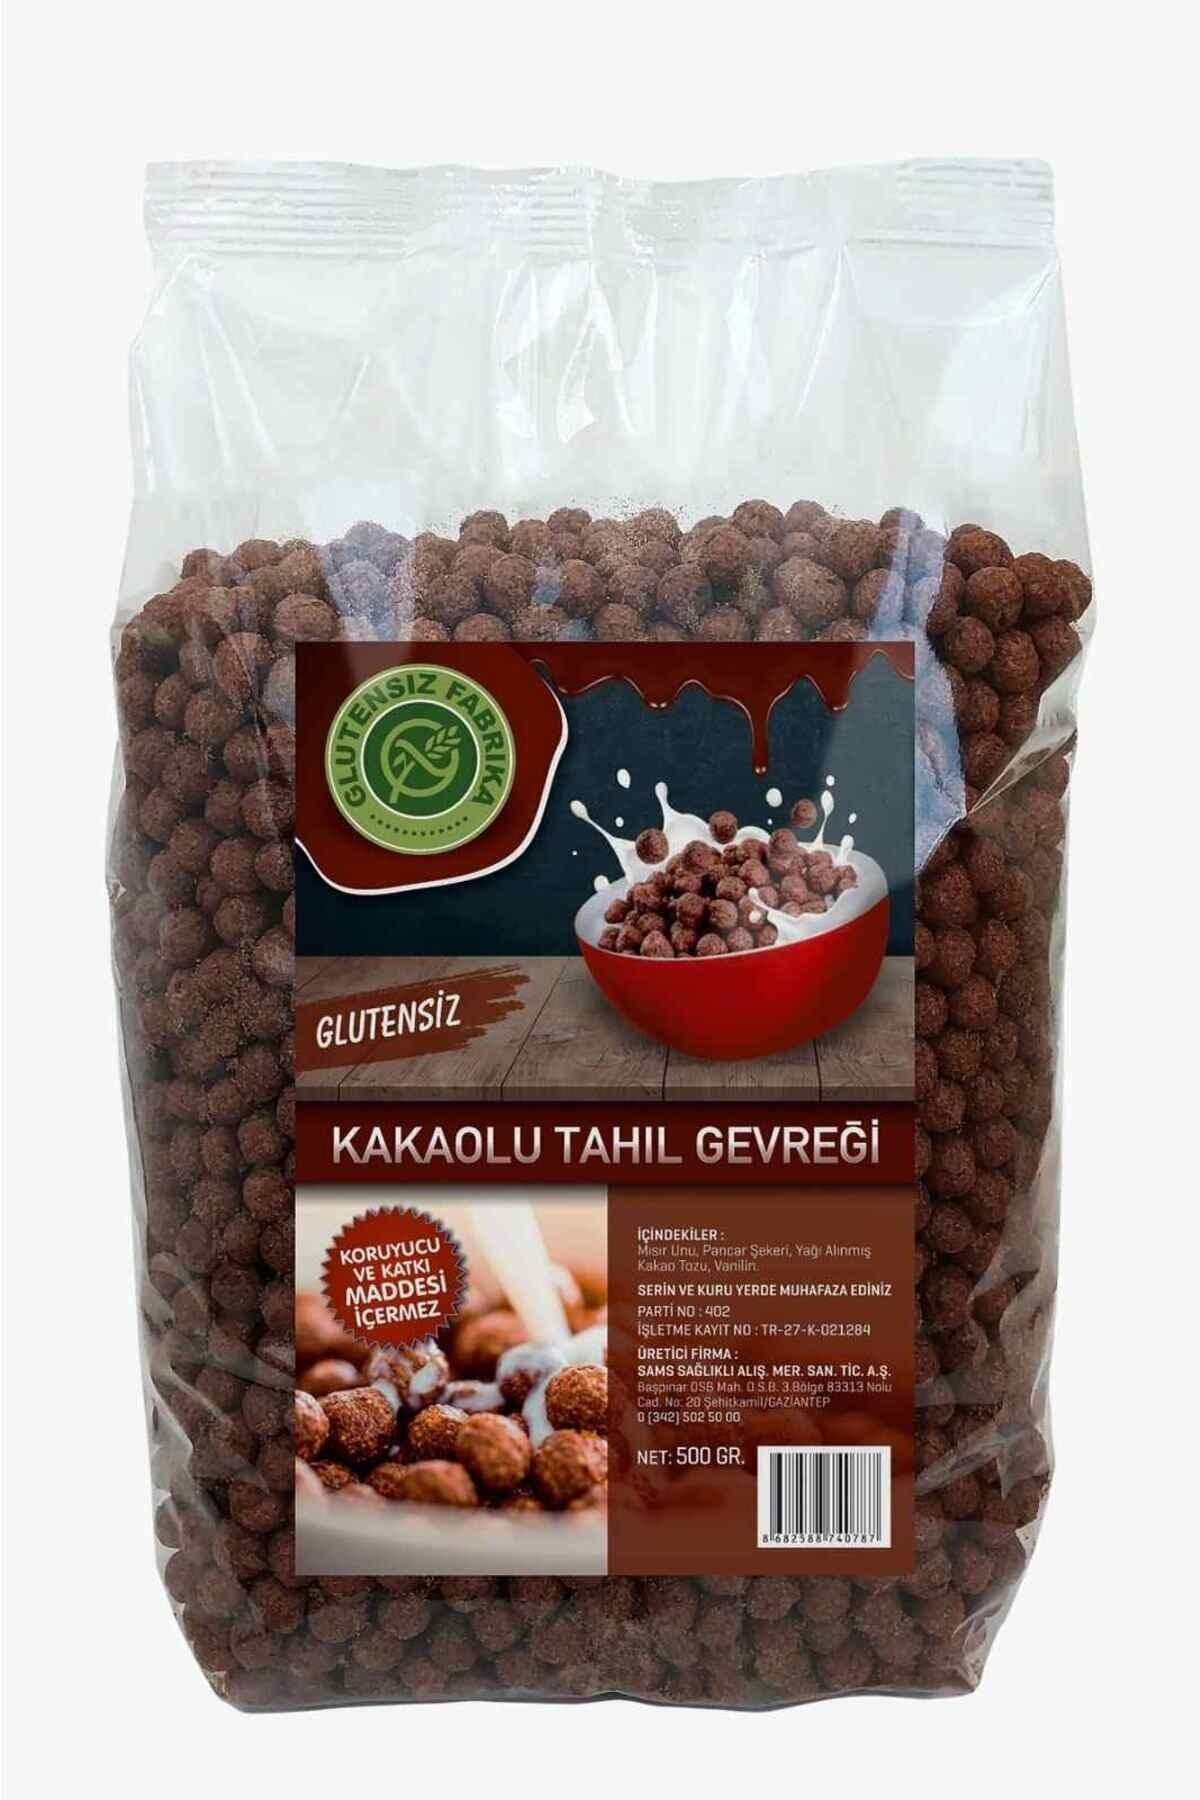 GLUTENSİZ FABRİKA Glutensiz Kakaolu Tahıl Gevreği Avantajlı Paket 500 Gram X 3 Adet